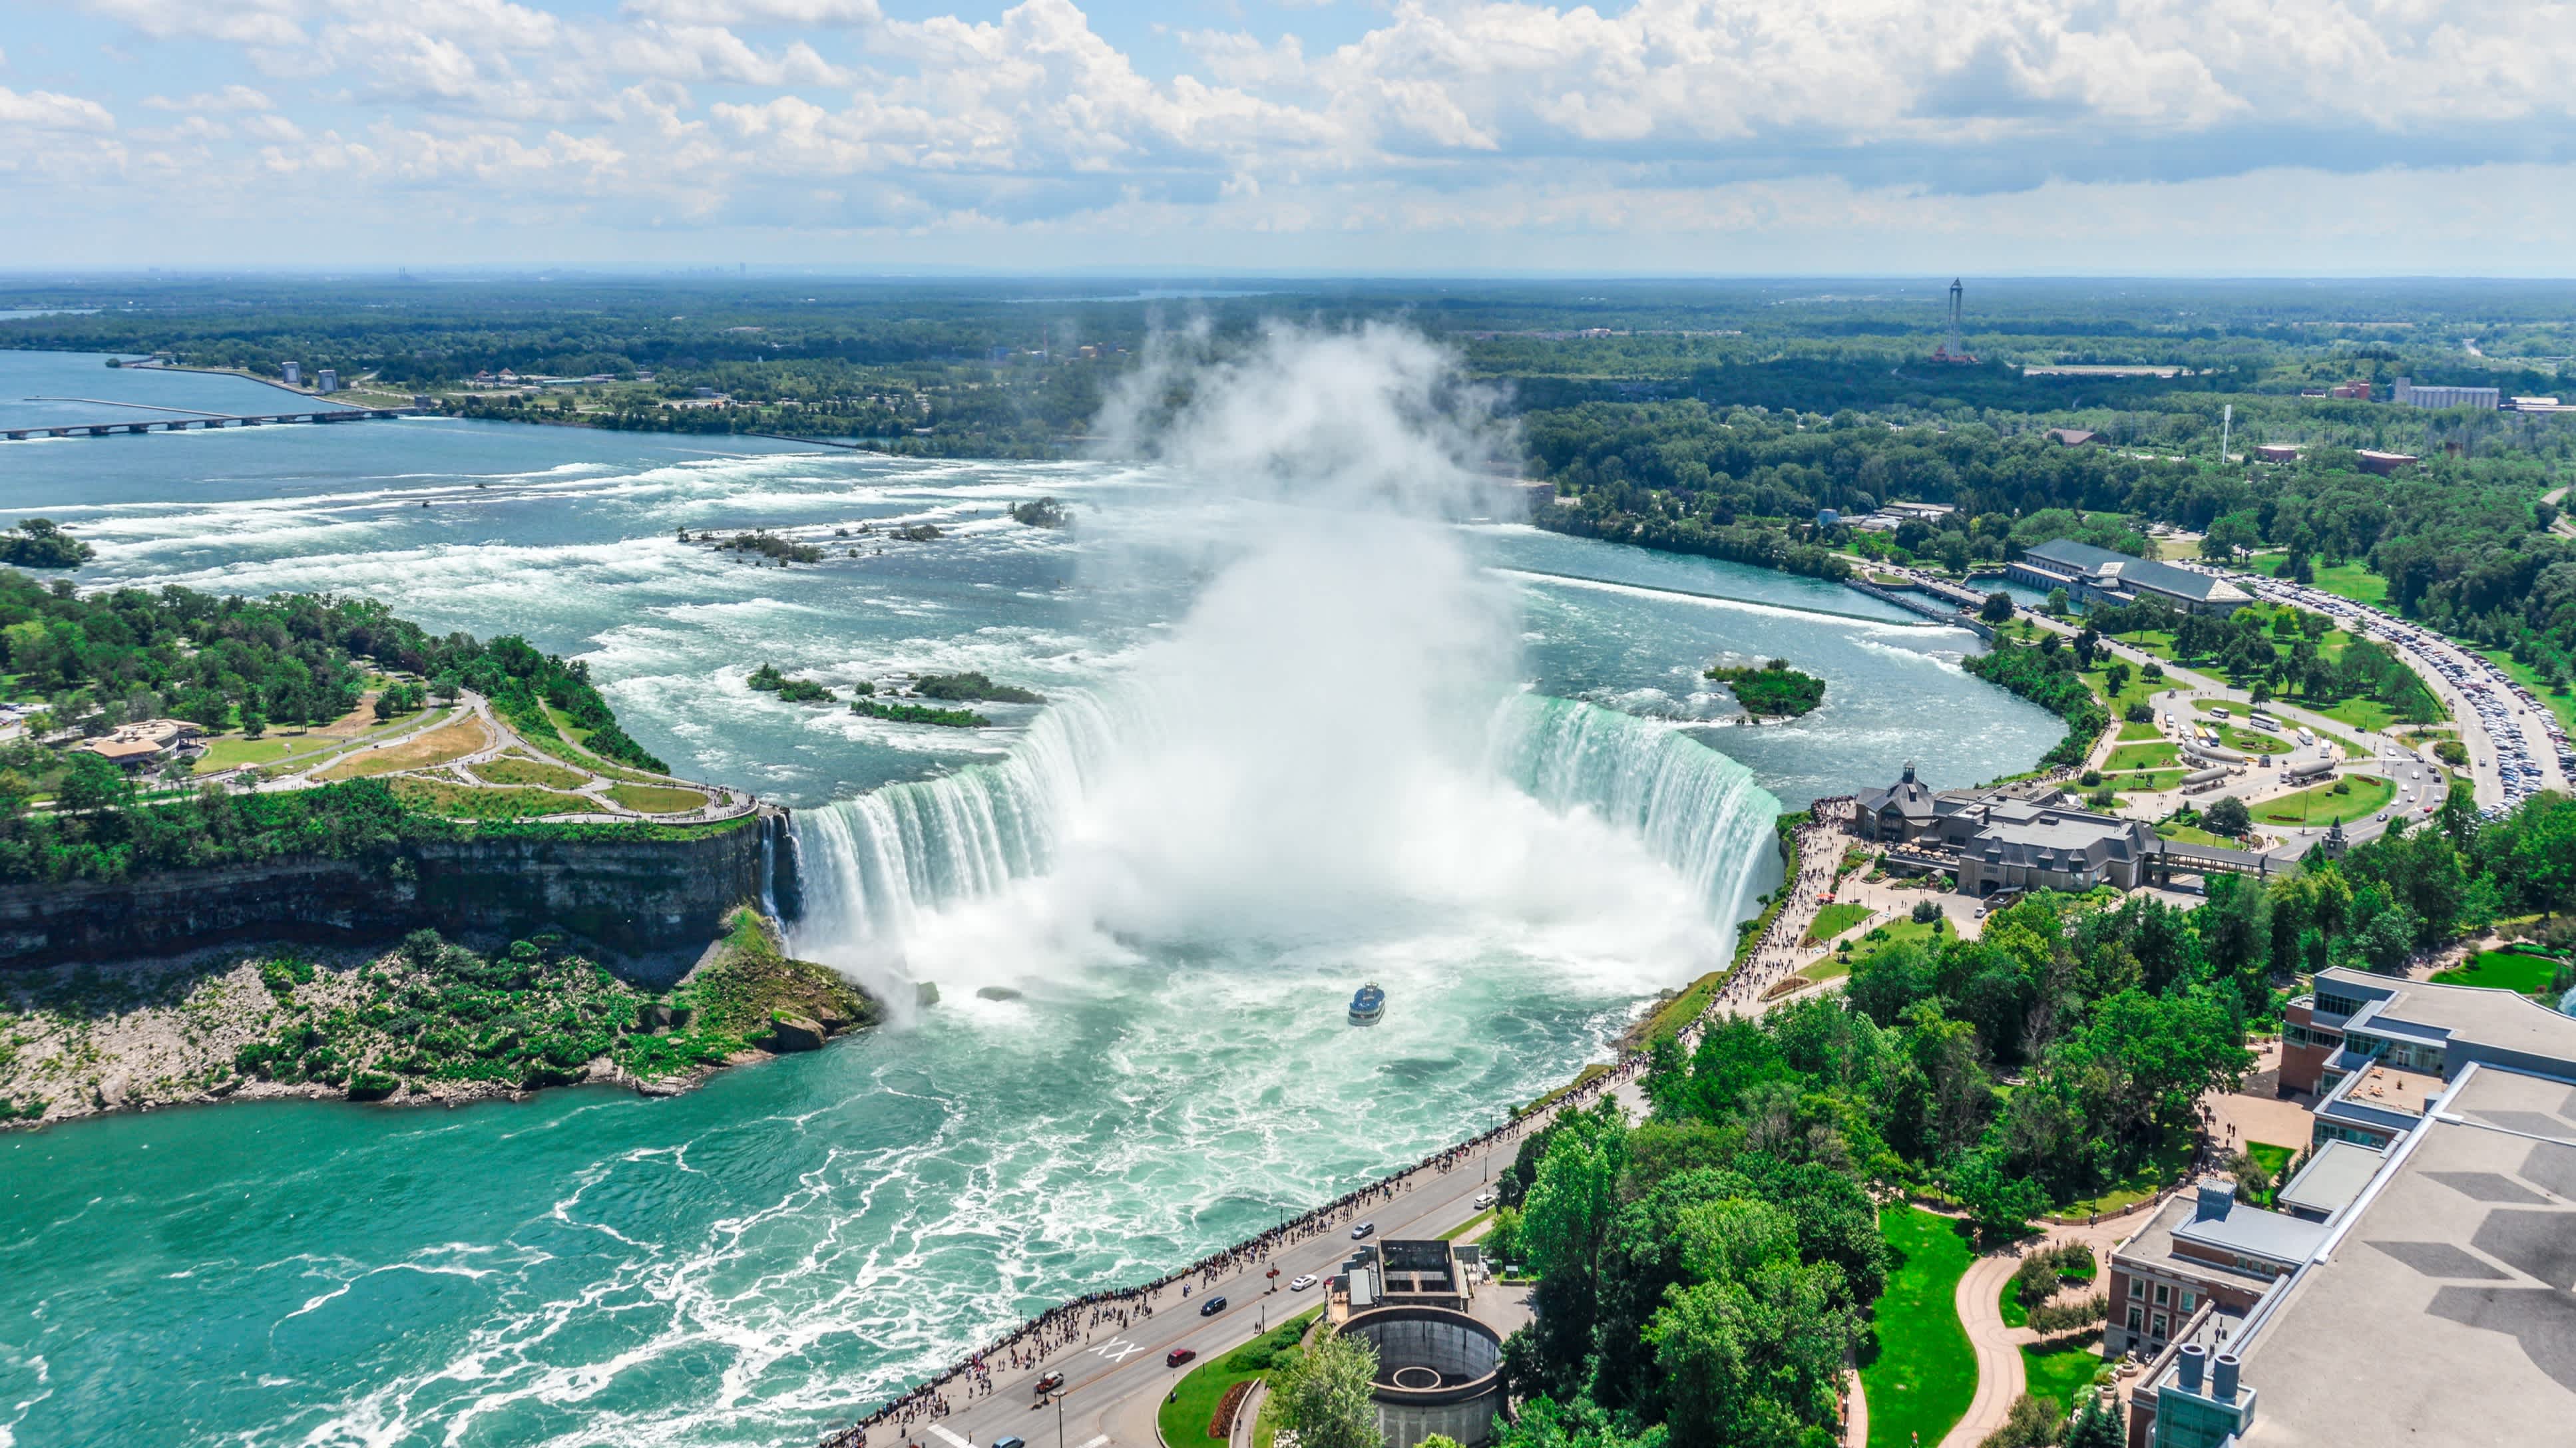 Les légendaires chutes du Niagara vues du ciel située à la frontière du Canada et des États-Unis.